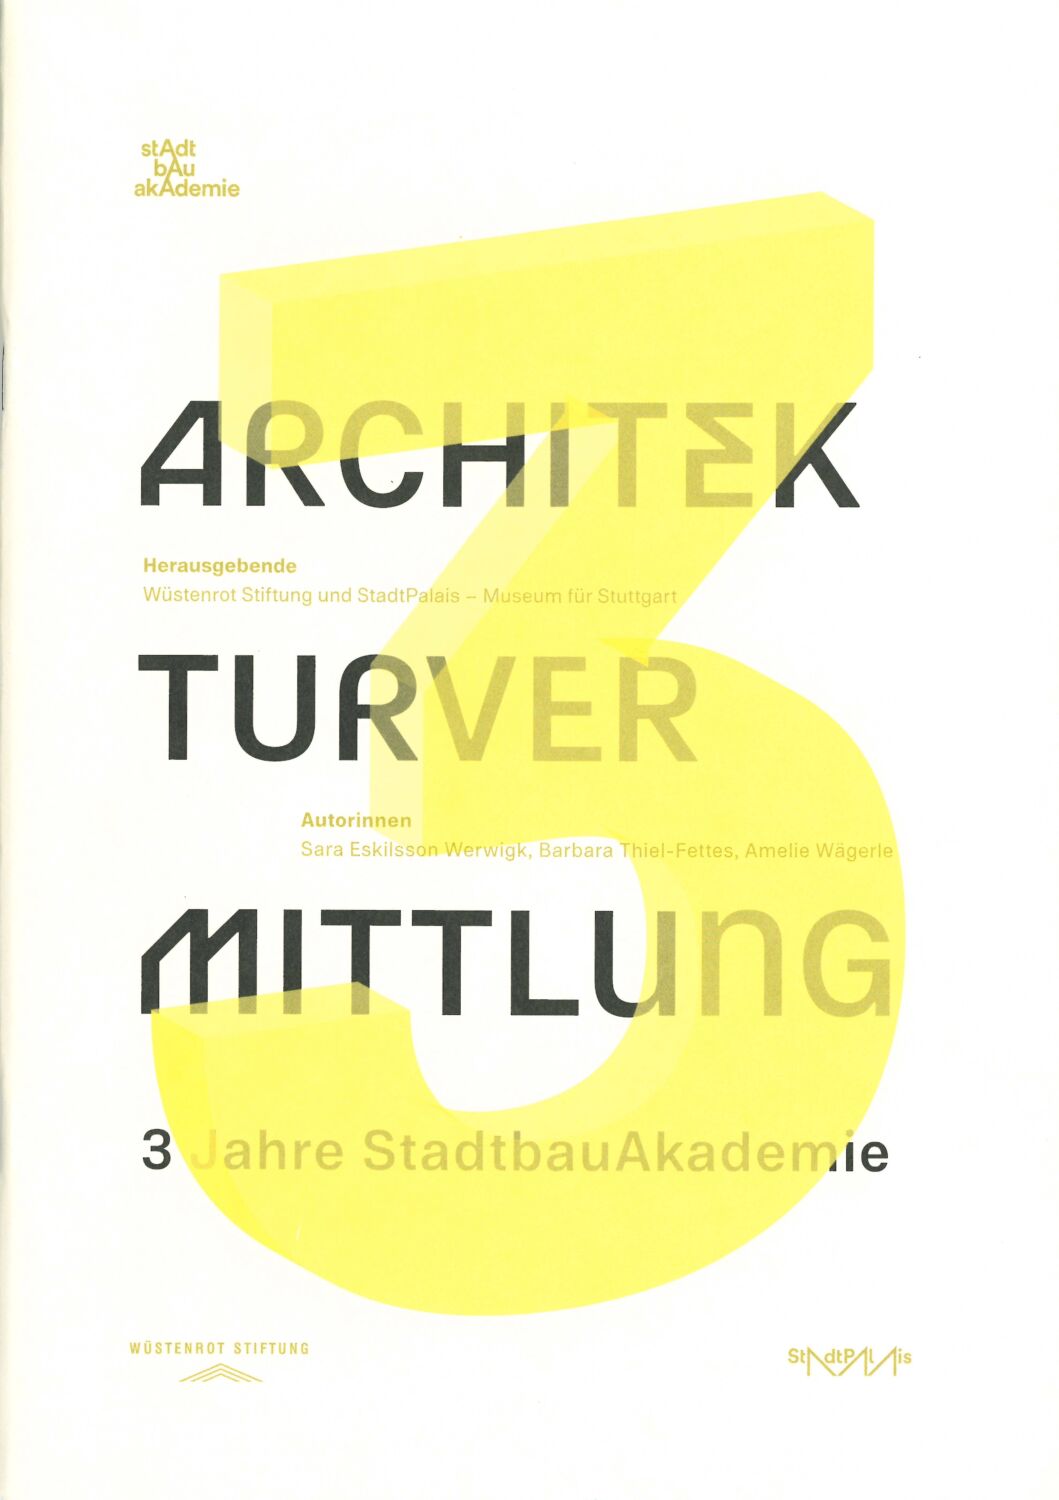 Architekturvermittlung. 3 Jahre StadtbauAkademie © Wüstenrot Stiftung